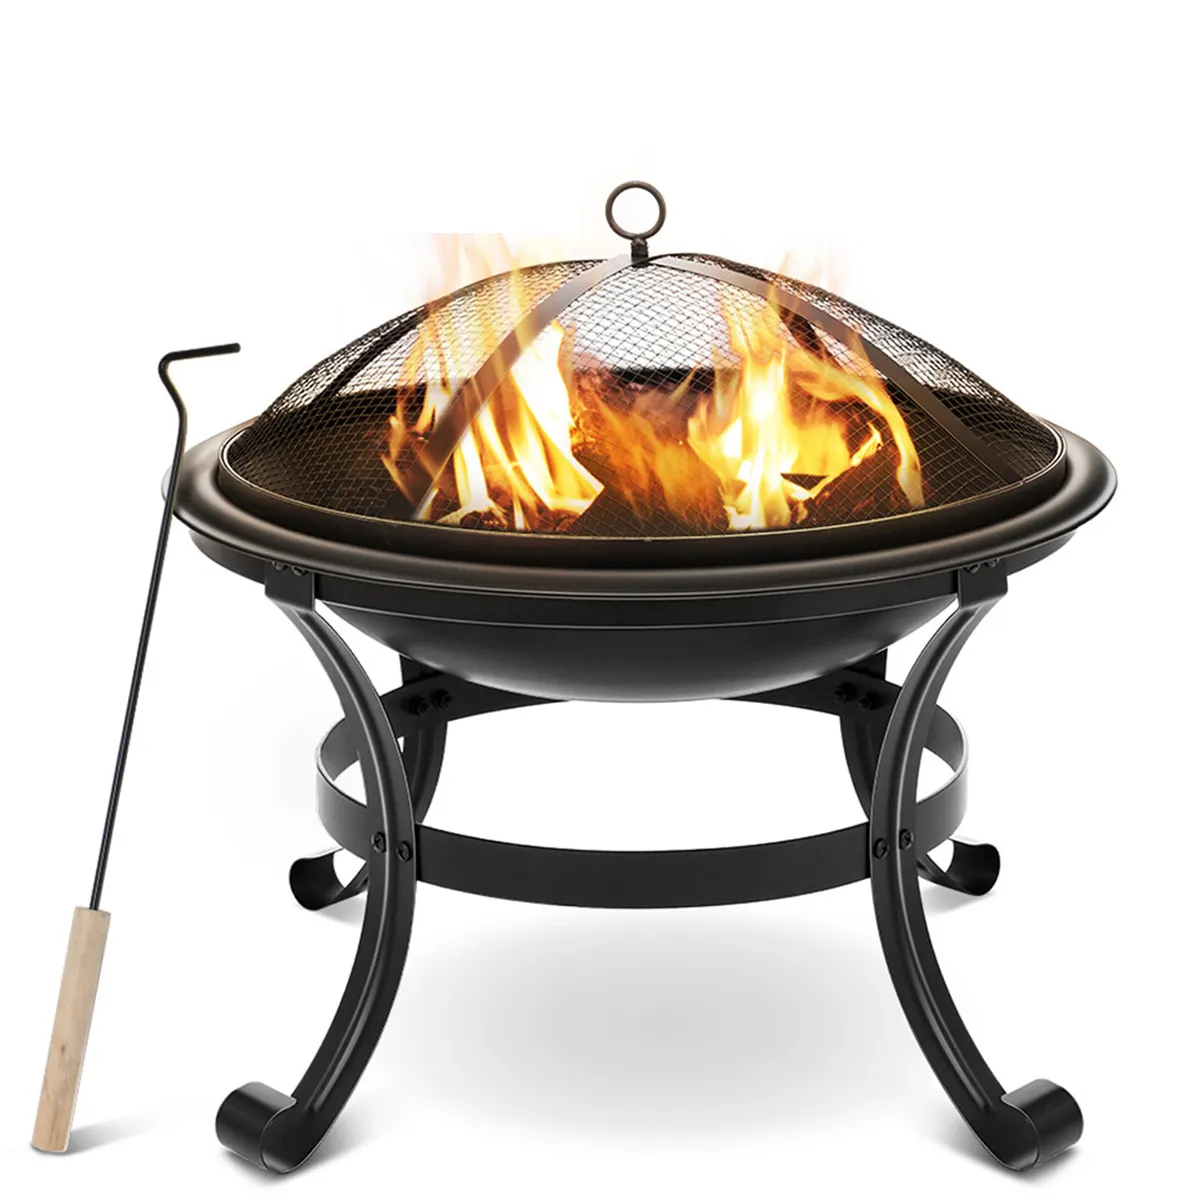 BBQ Grill Outdoor Fire Pit stufa giardino Patio legno Log Barbecue Grill Net Set utensili da cucina campeggio braciere stufa per natale EU US